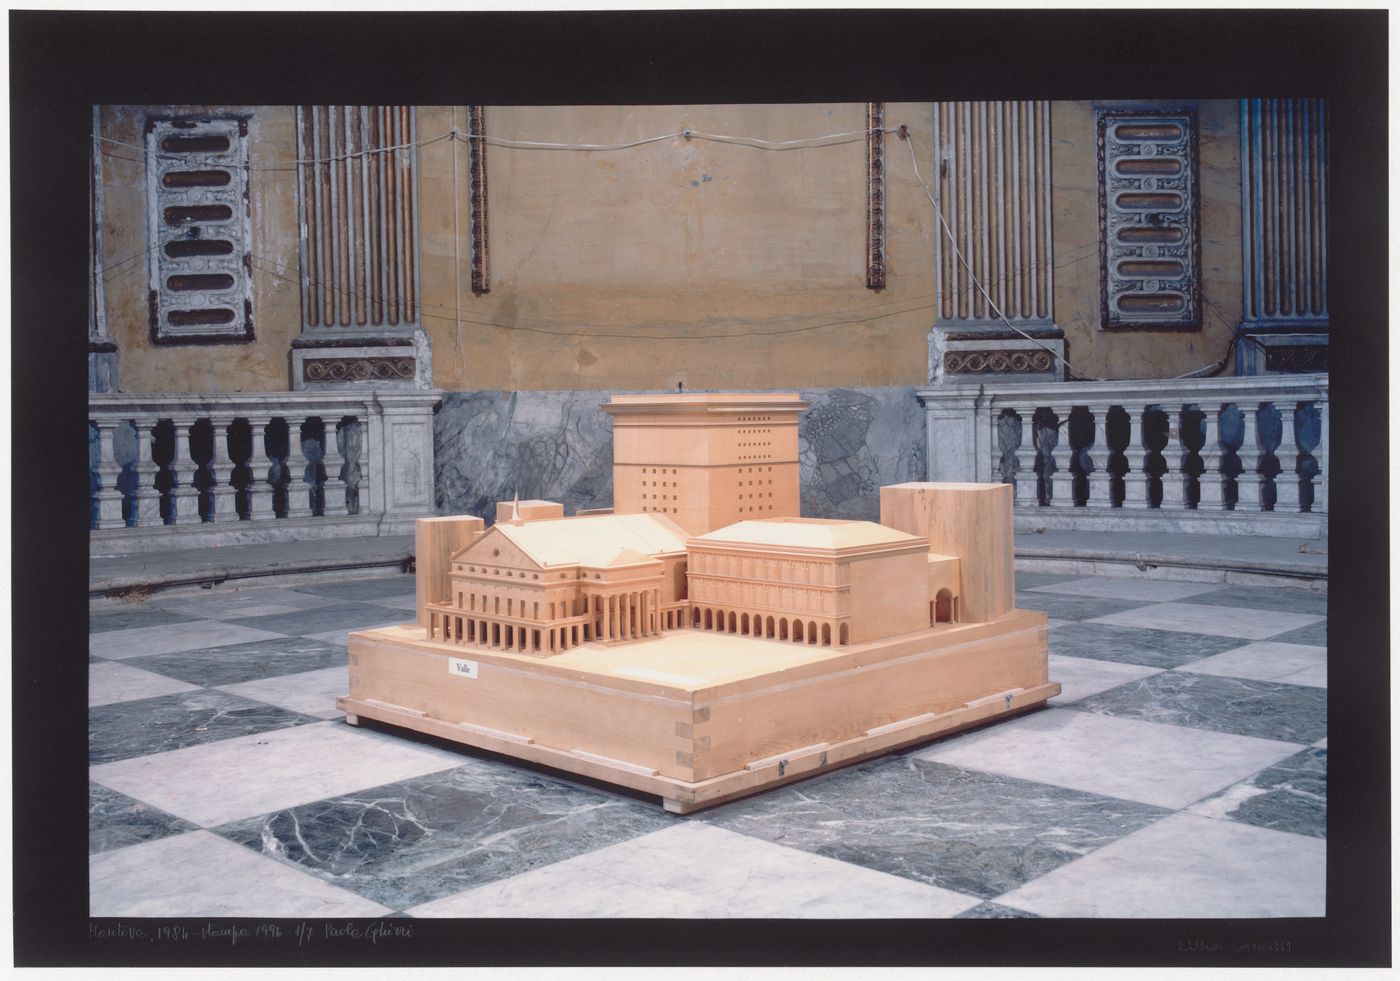 Model for the Carlo Felice Theatre in Genoa, 1983, exhibited in the Casadel Mantegna, Mantua